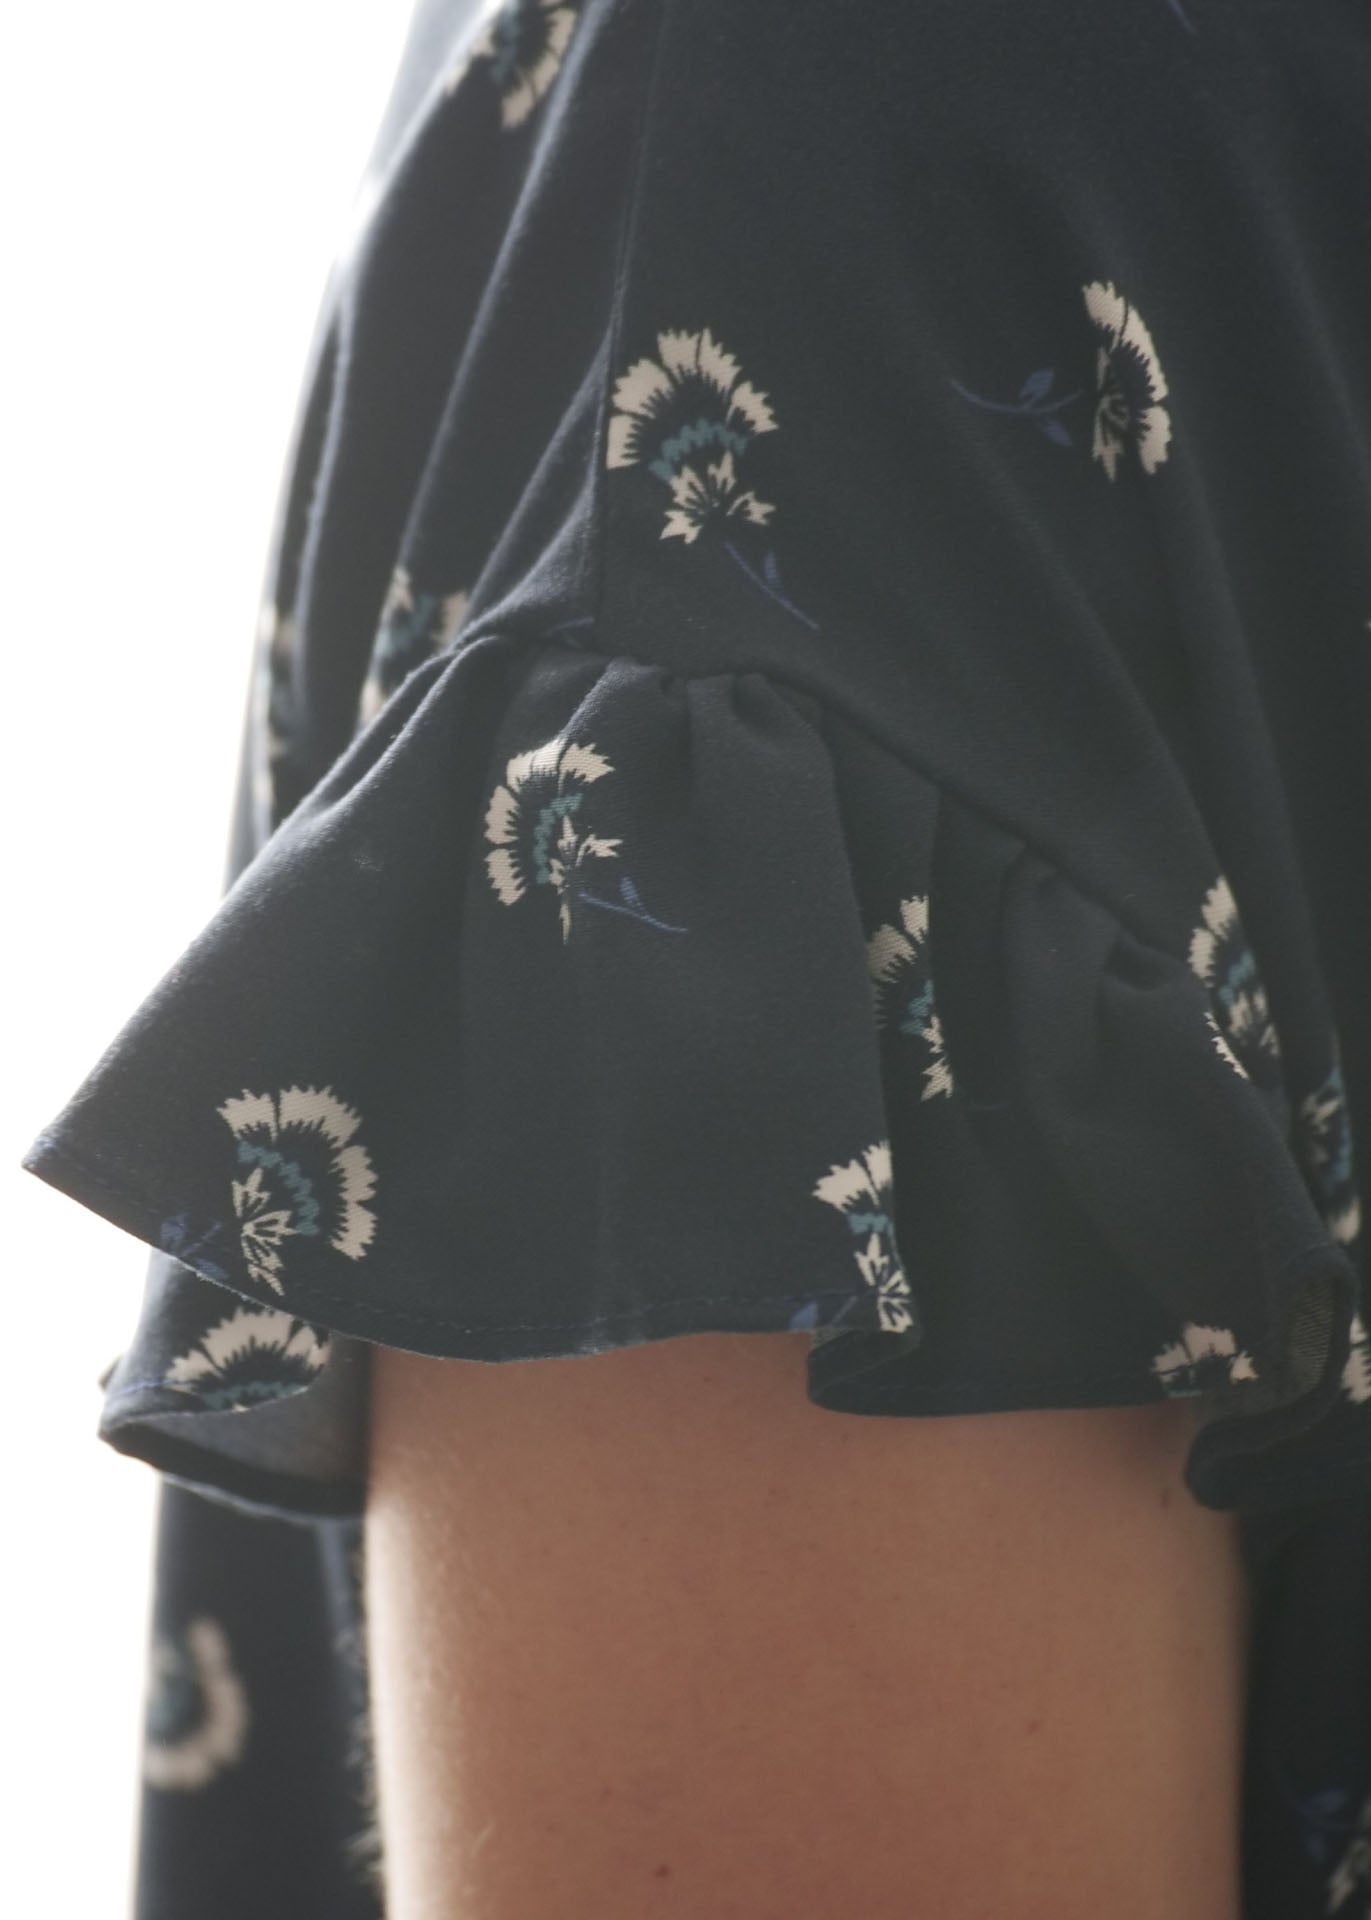 Irene Plum Dress babydoll sewing pattern CocoWawa Crafts detail ruffle